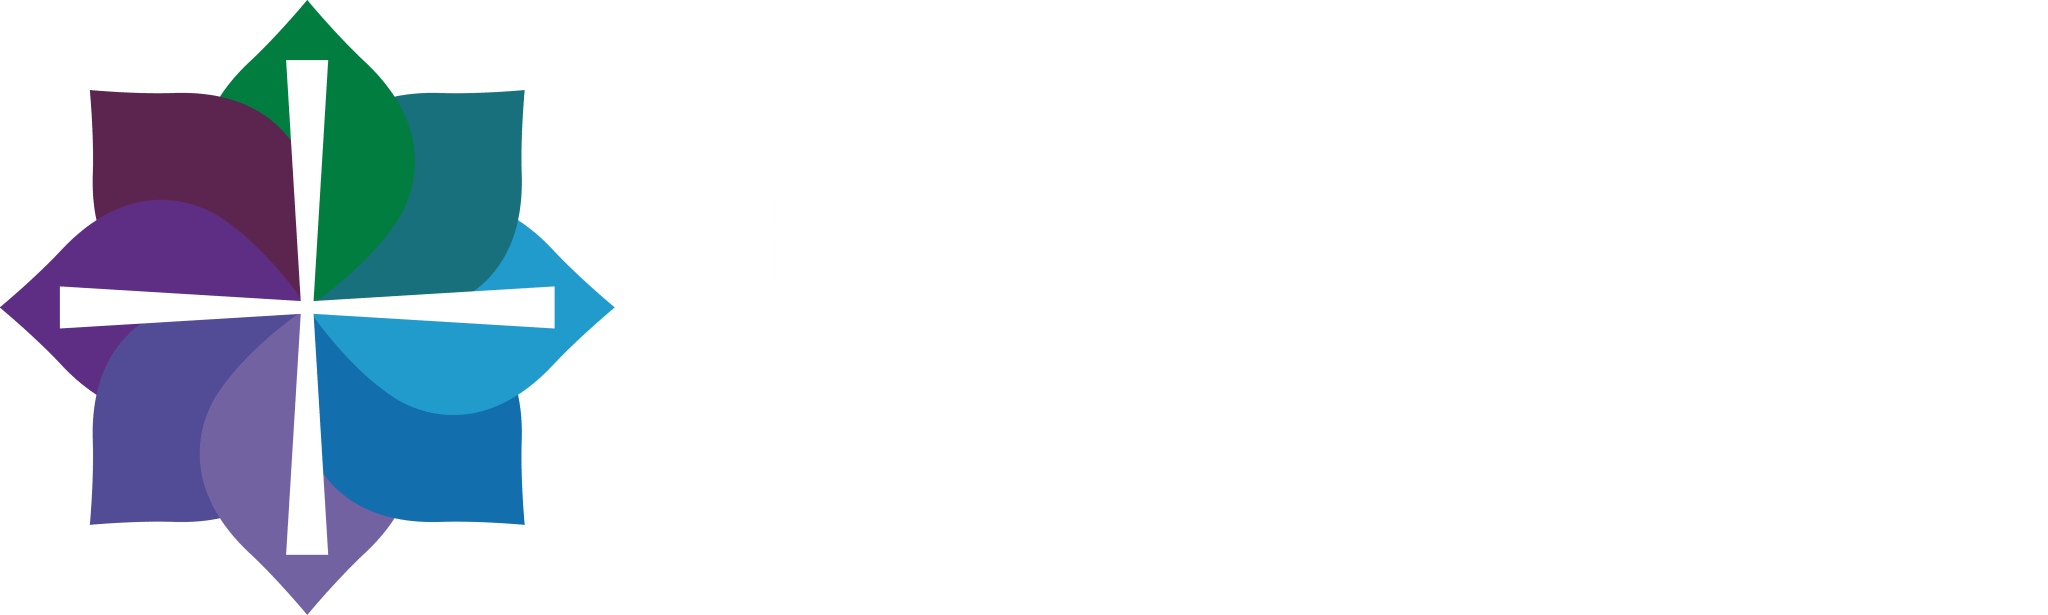 Catholic Foundation of Southwest Iowa